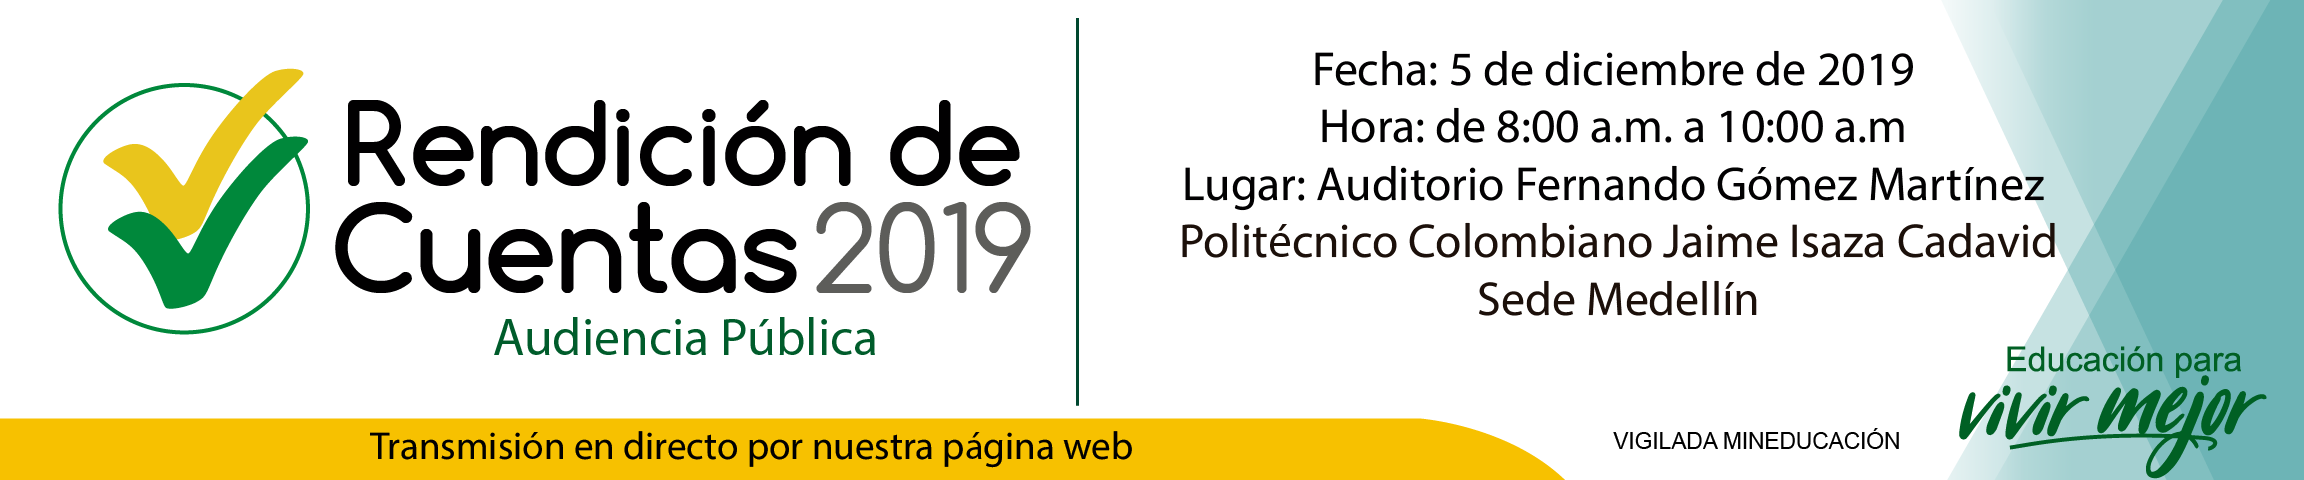 El 5 de diciembre el Rector del Politécnico Colombiano Jaime Isaza Cadavid realizará la Audiencia Pública de Rendición de Cuentas 2019